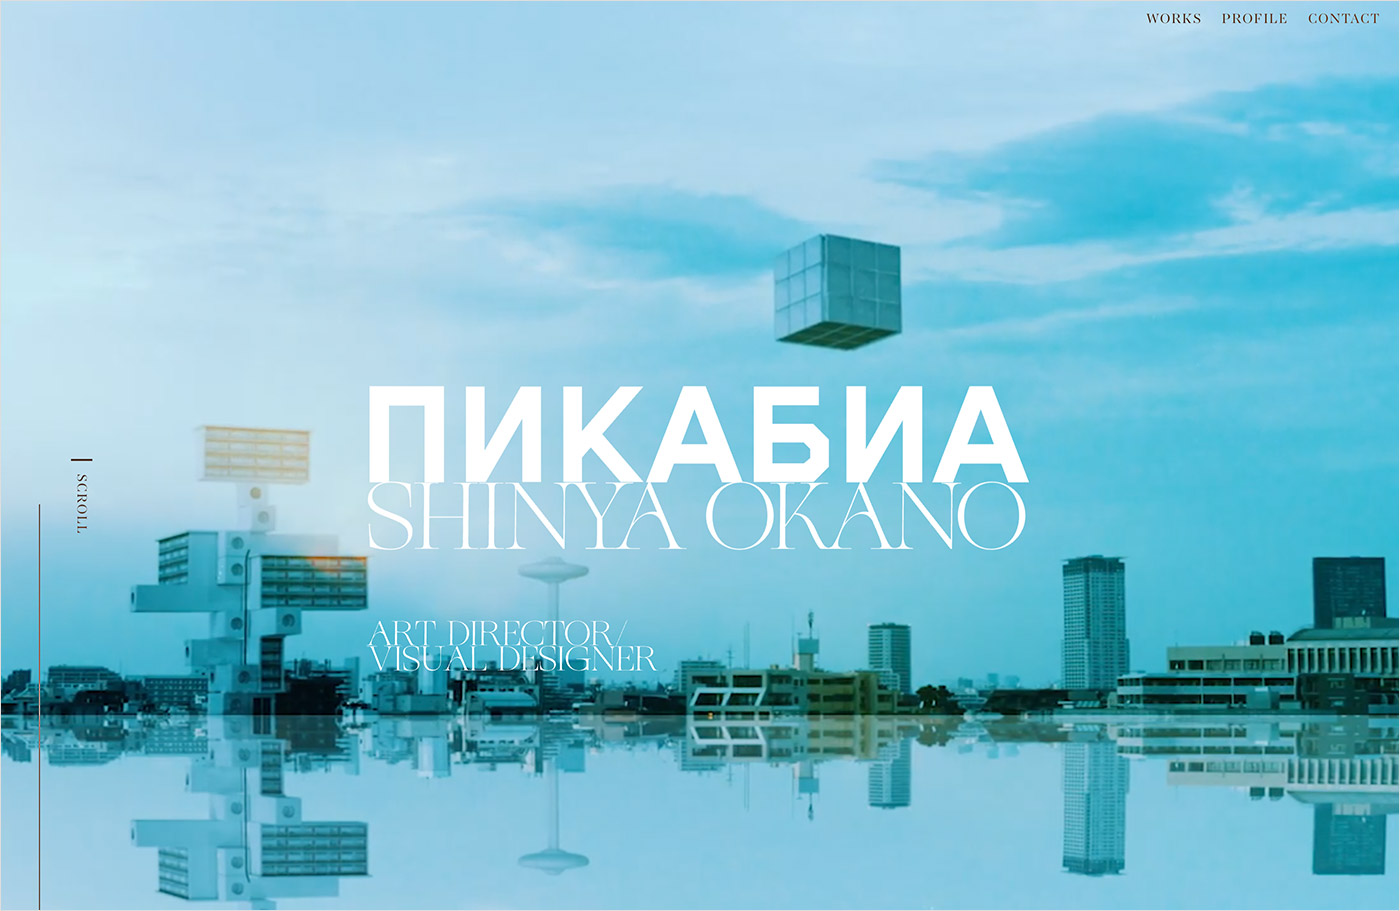 SHINYA OKANO / Art Directer_Visual Designerウェブサイトの画面キャプチャ画像